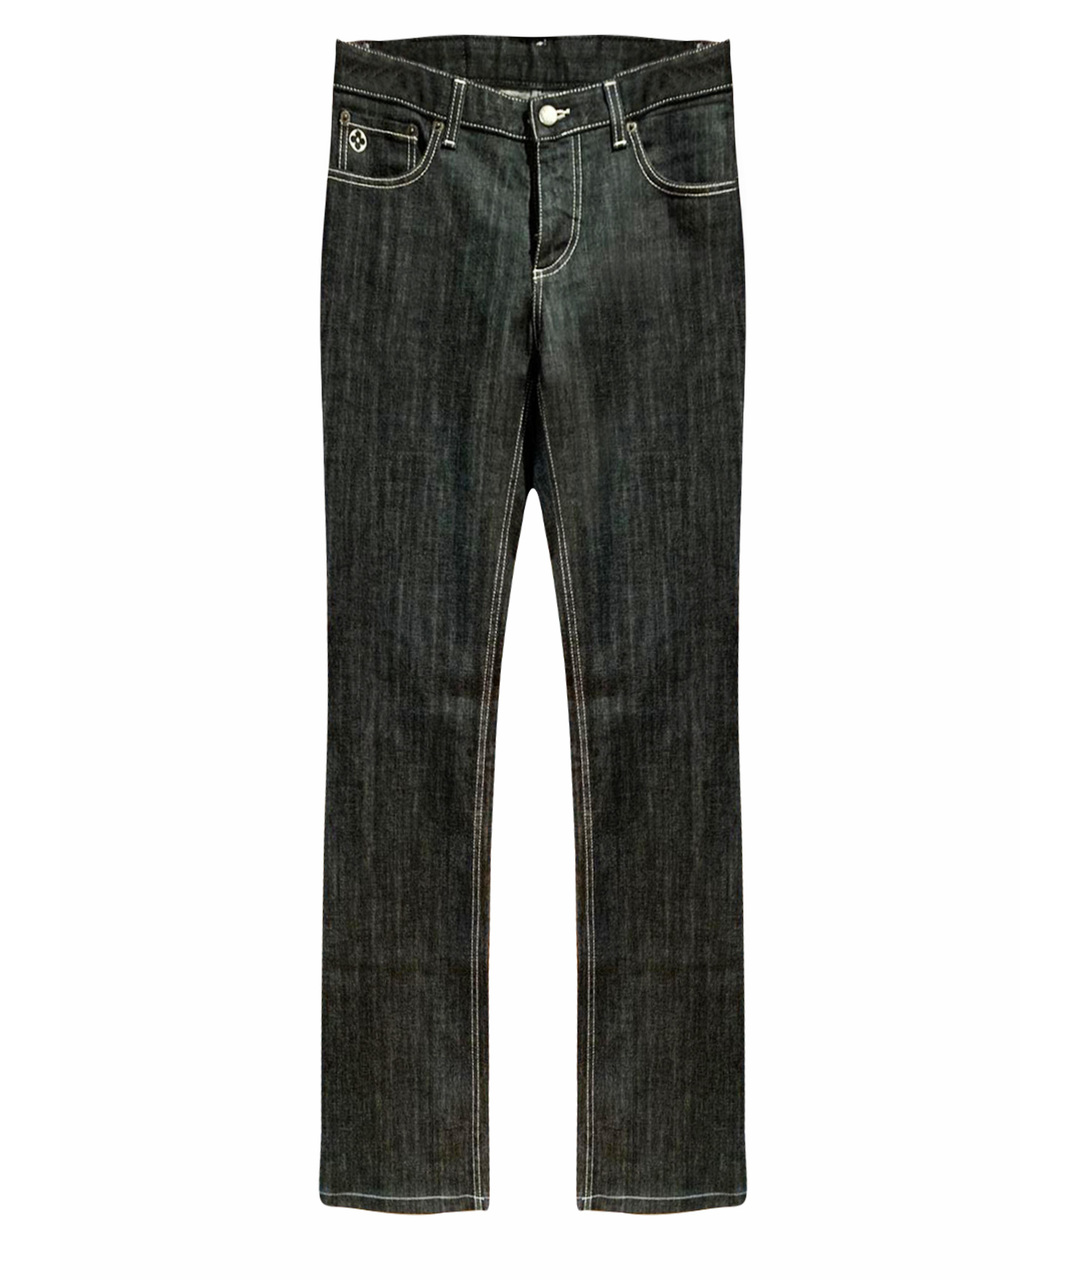 LOUIS VUITTON PRE-OWNED Черные хлопковые джинсы клеш, фото 1